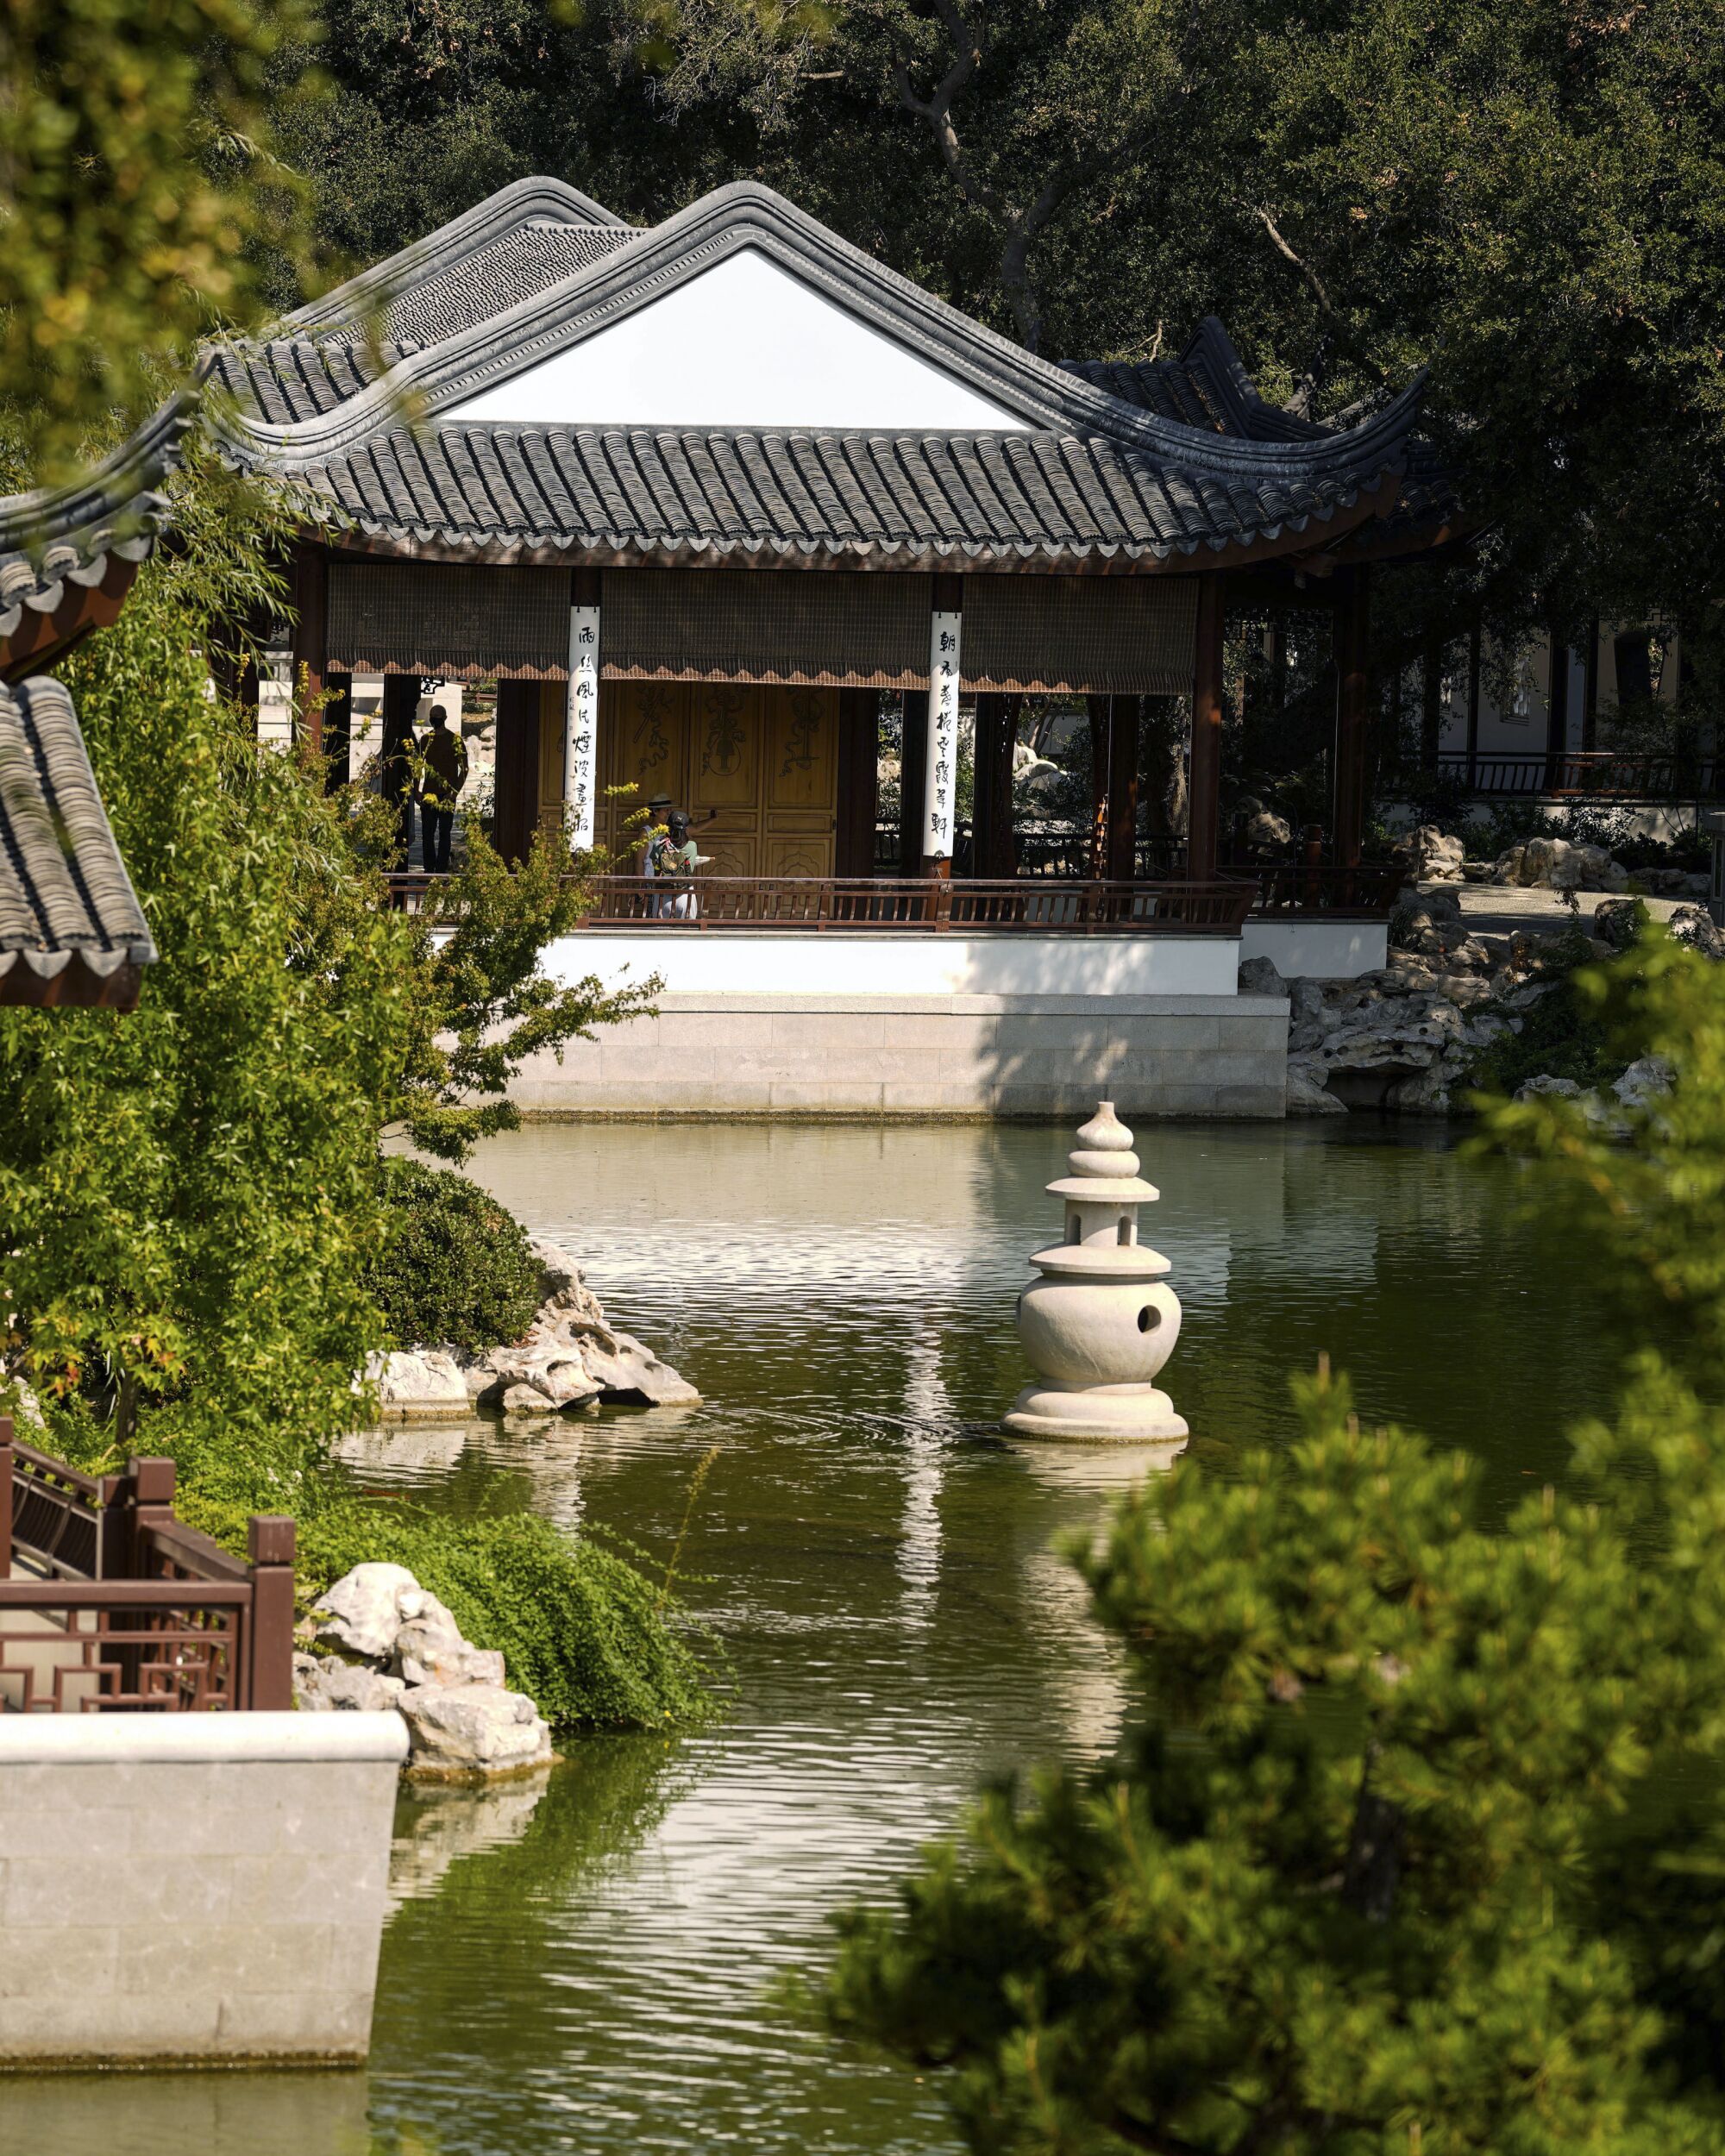 Huntington Kütüphanesi, Sanat Müzesi ve Botanik Bahçeleri'ndeki Çin Bahçesi